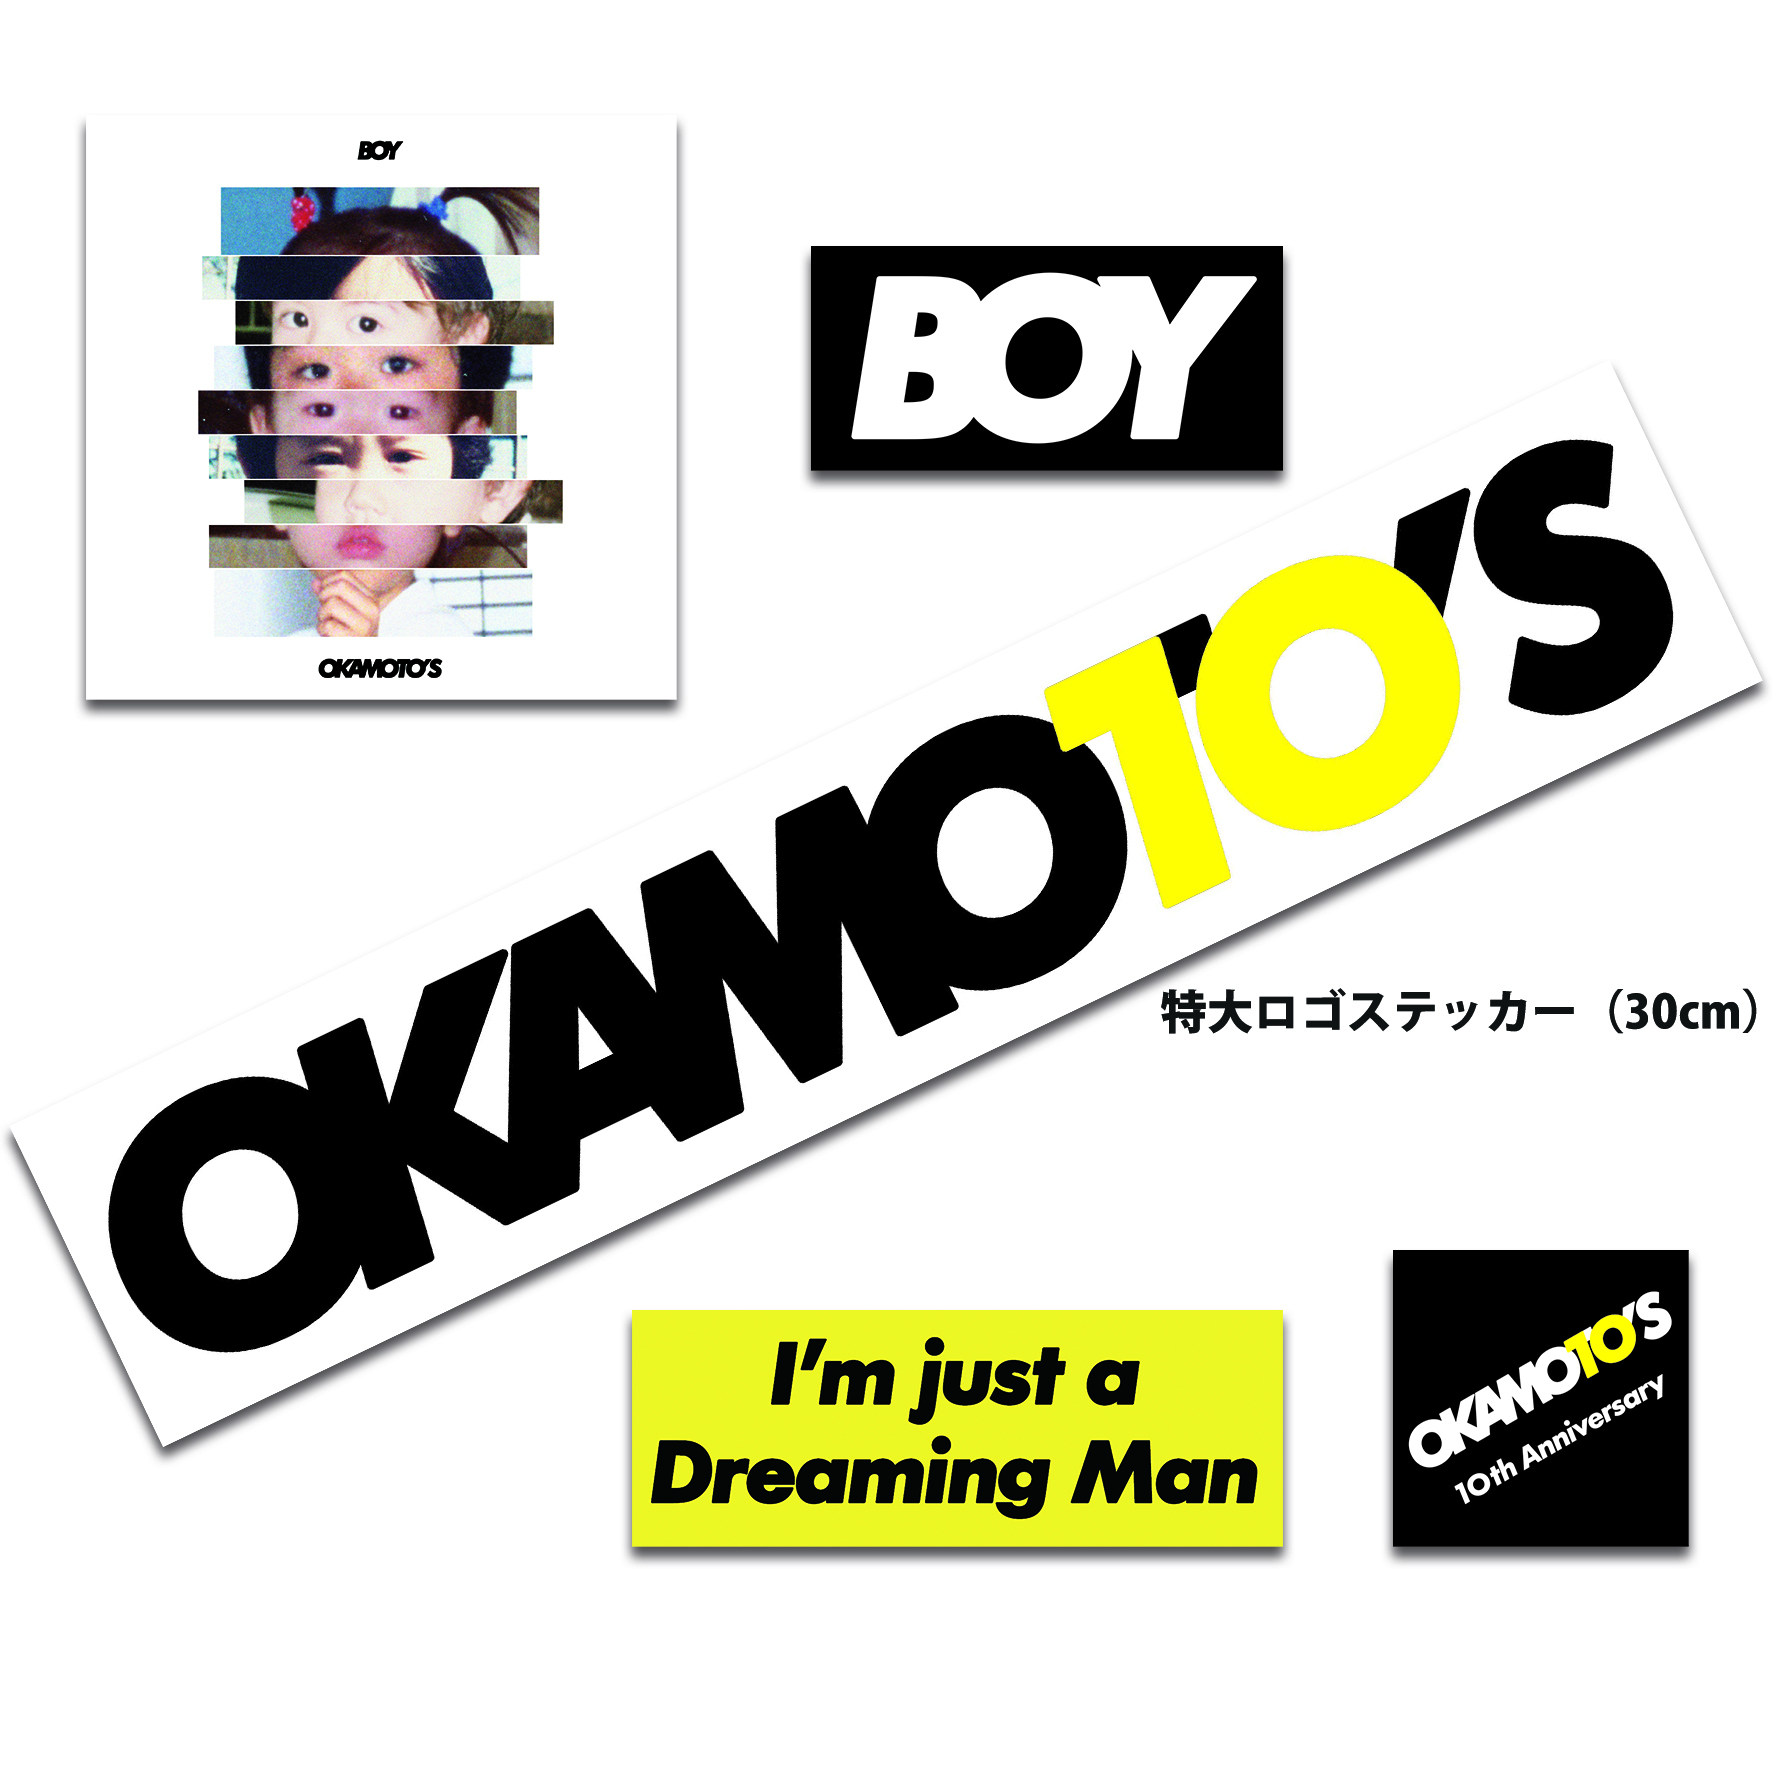 OKAMOTO'S 8th ALBUM「BOY」SPECIAL SITE